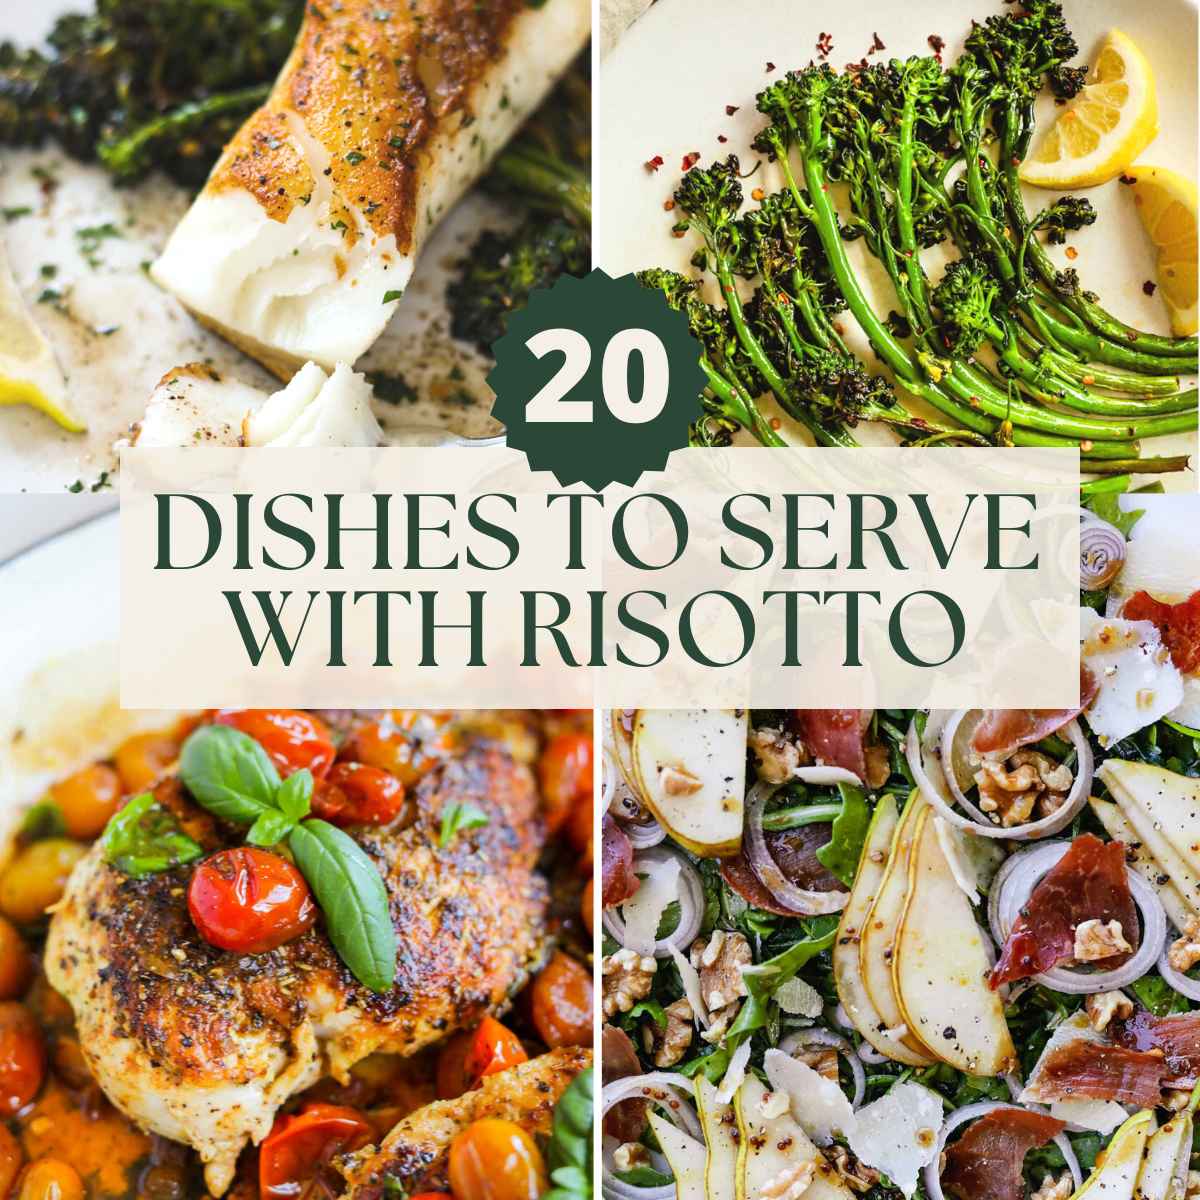 20 delicious sides to serve with risotto, including fish, broccoletti, mozzarella-stuffed chicken pomodoro, and prosciutto arugula salad.